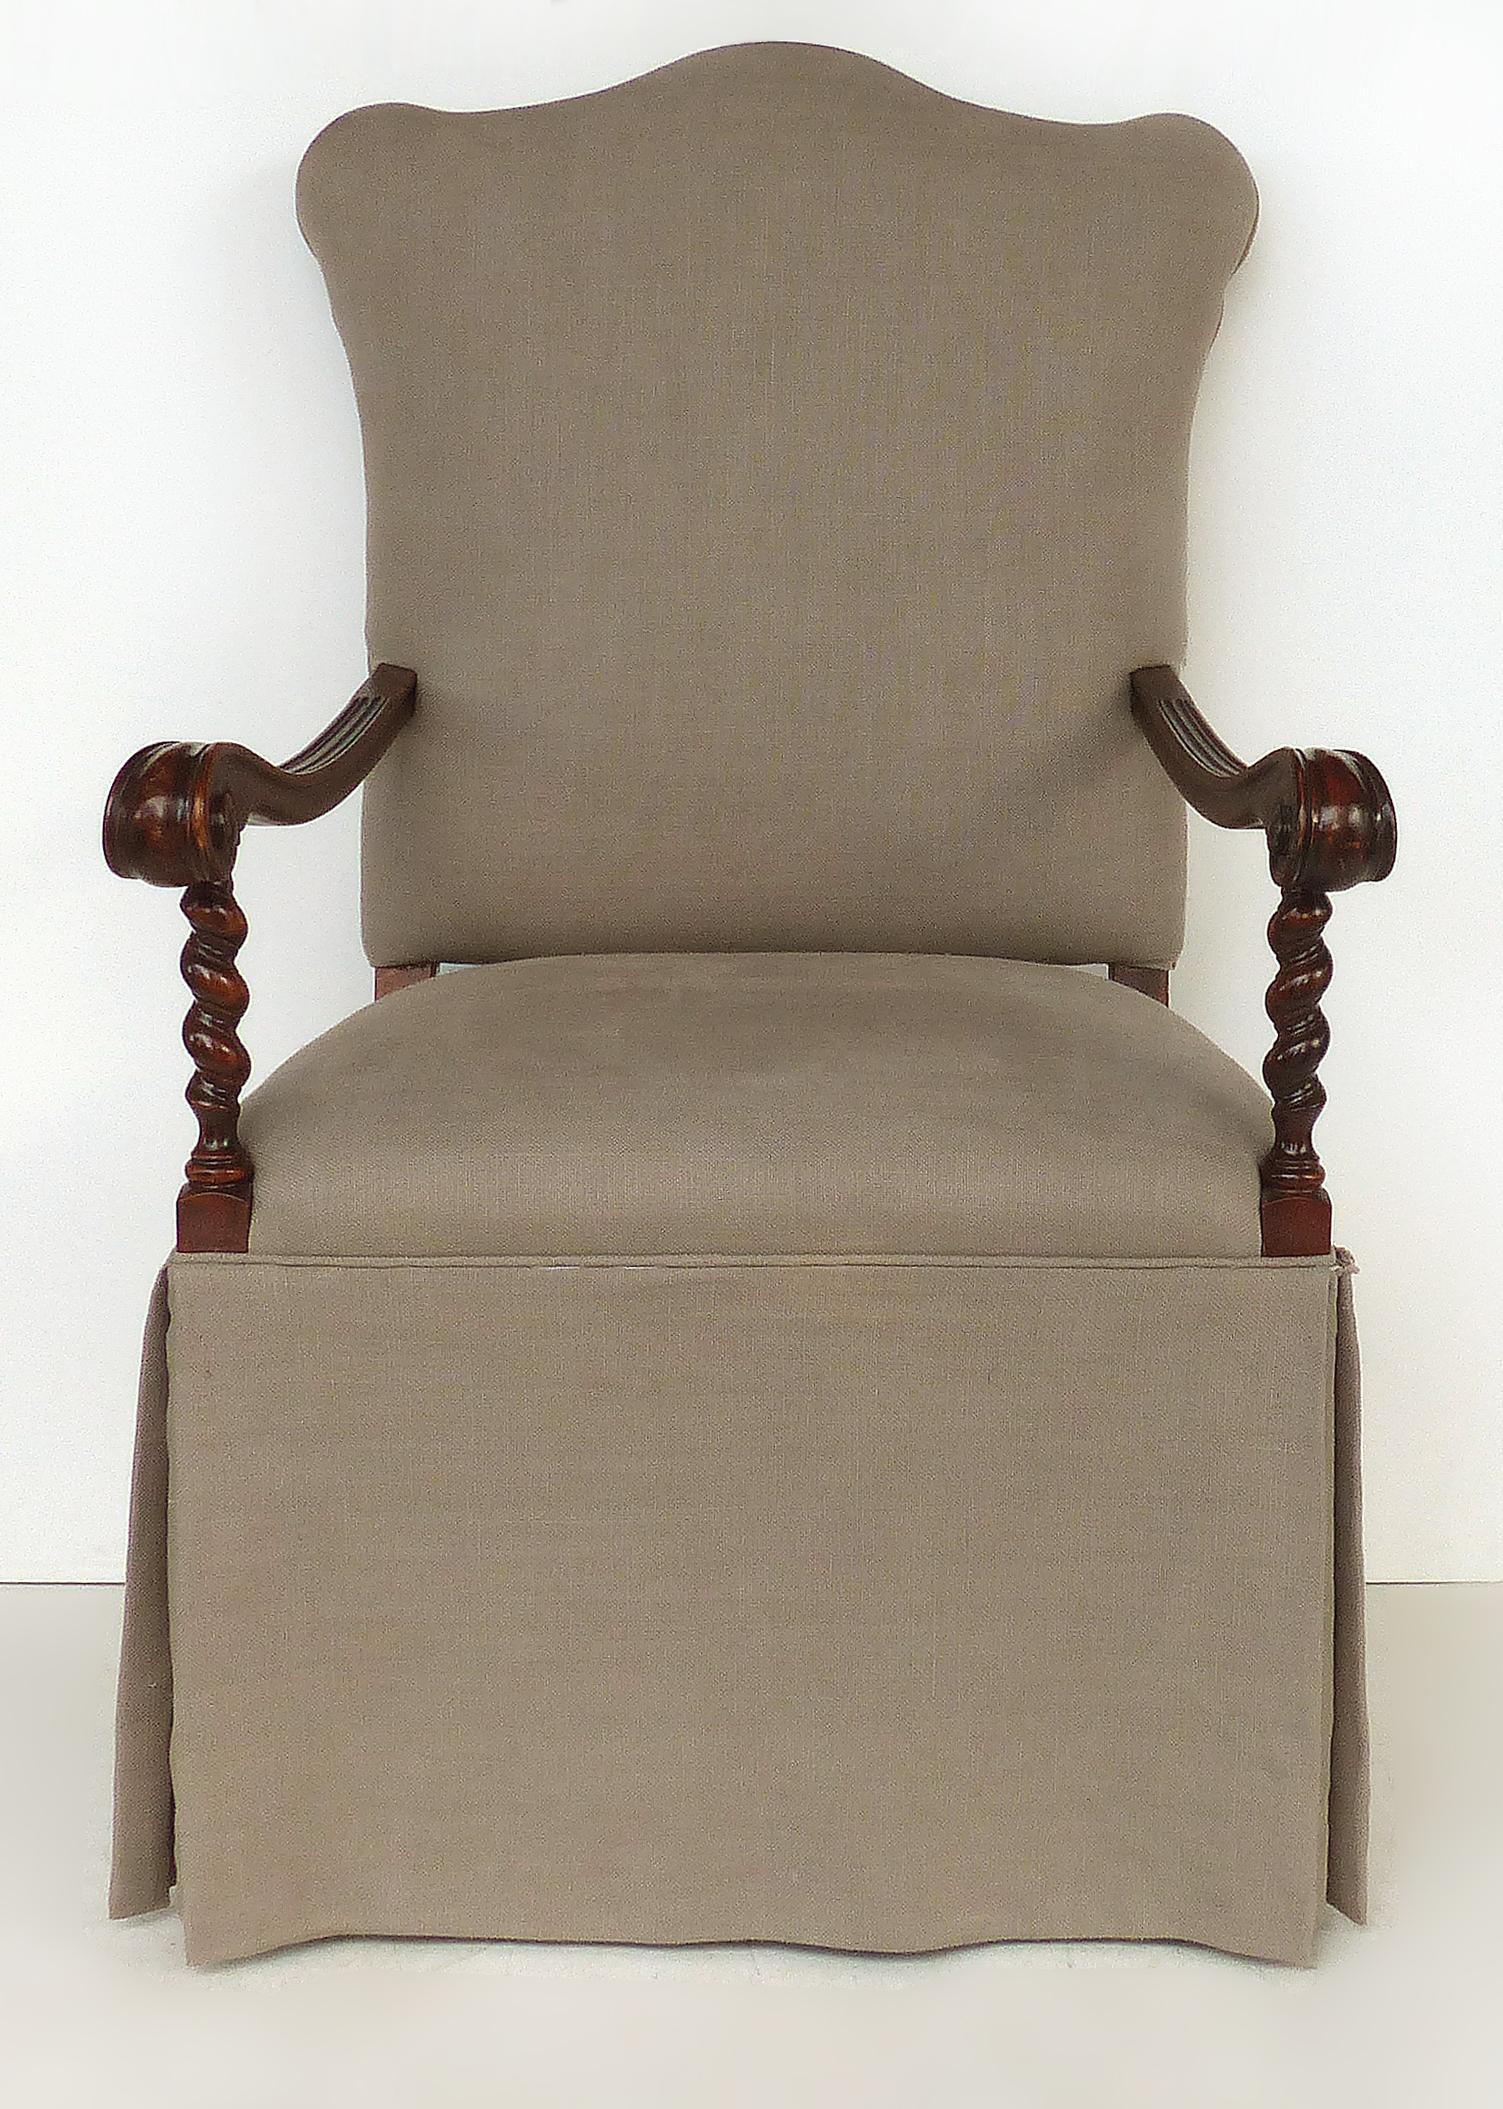 Geschnitzter Gerstendrehsessel, Sitz und Rücken gepolstert

Zum Verkauf angeboten wird ein Sessel mit einem geschnitzten, gedrechselten Gerstendrehrahmen. Die Schnitzerei ist gegenläufig oder von Hand. Die Sitzfläche und die Rückenlehne sind mit